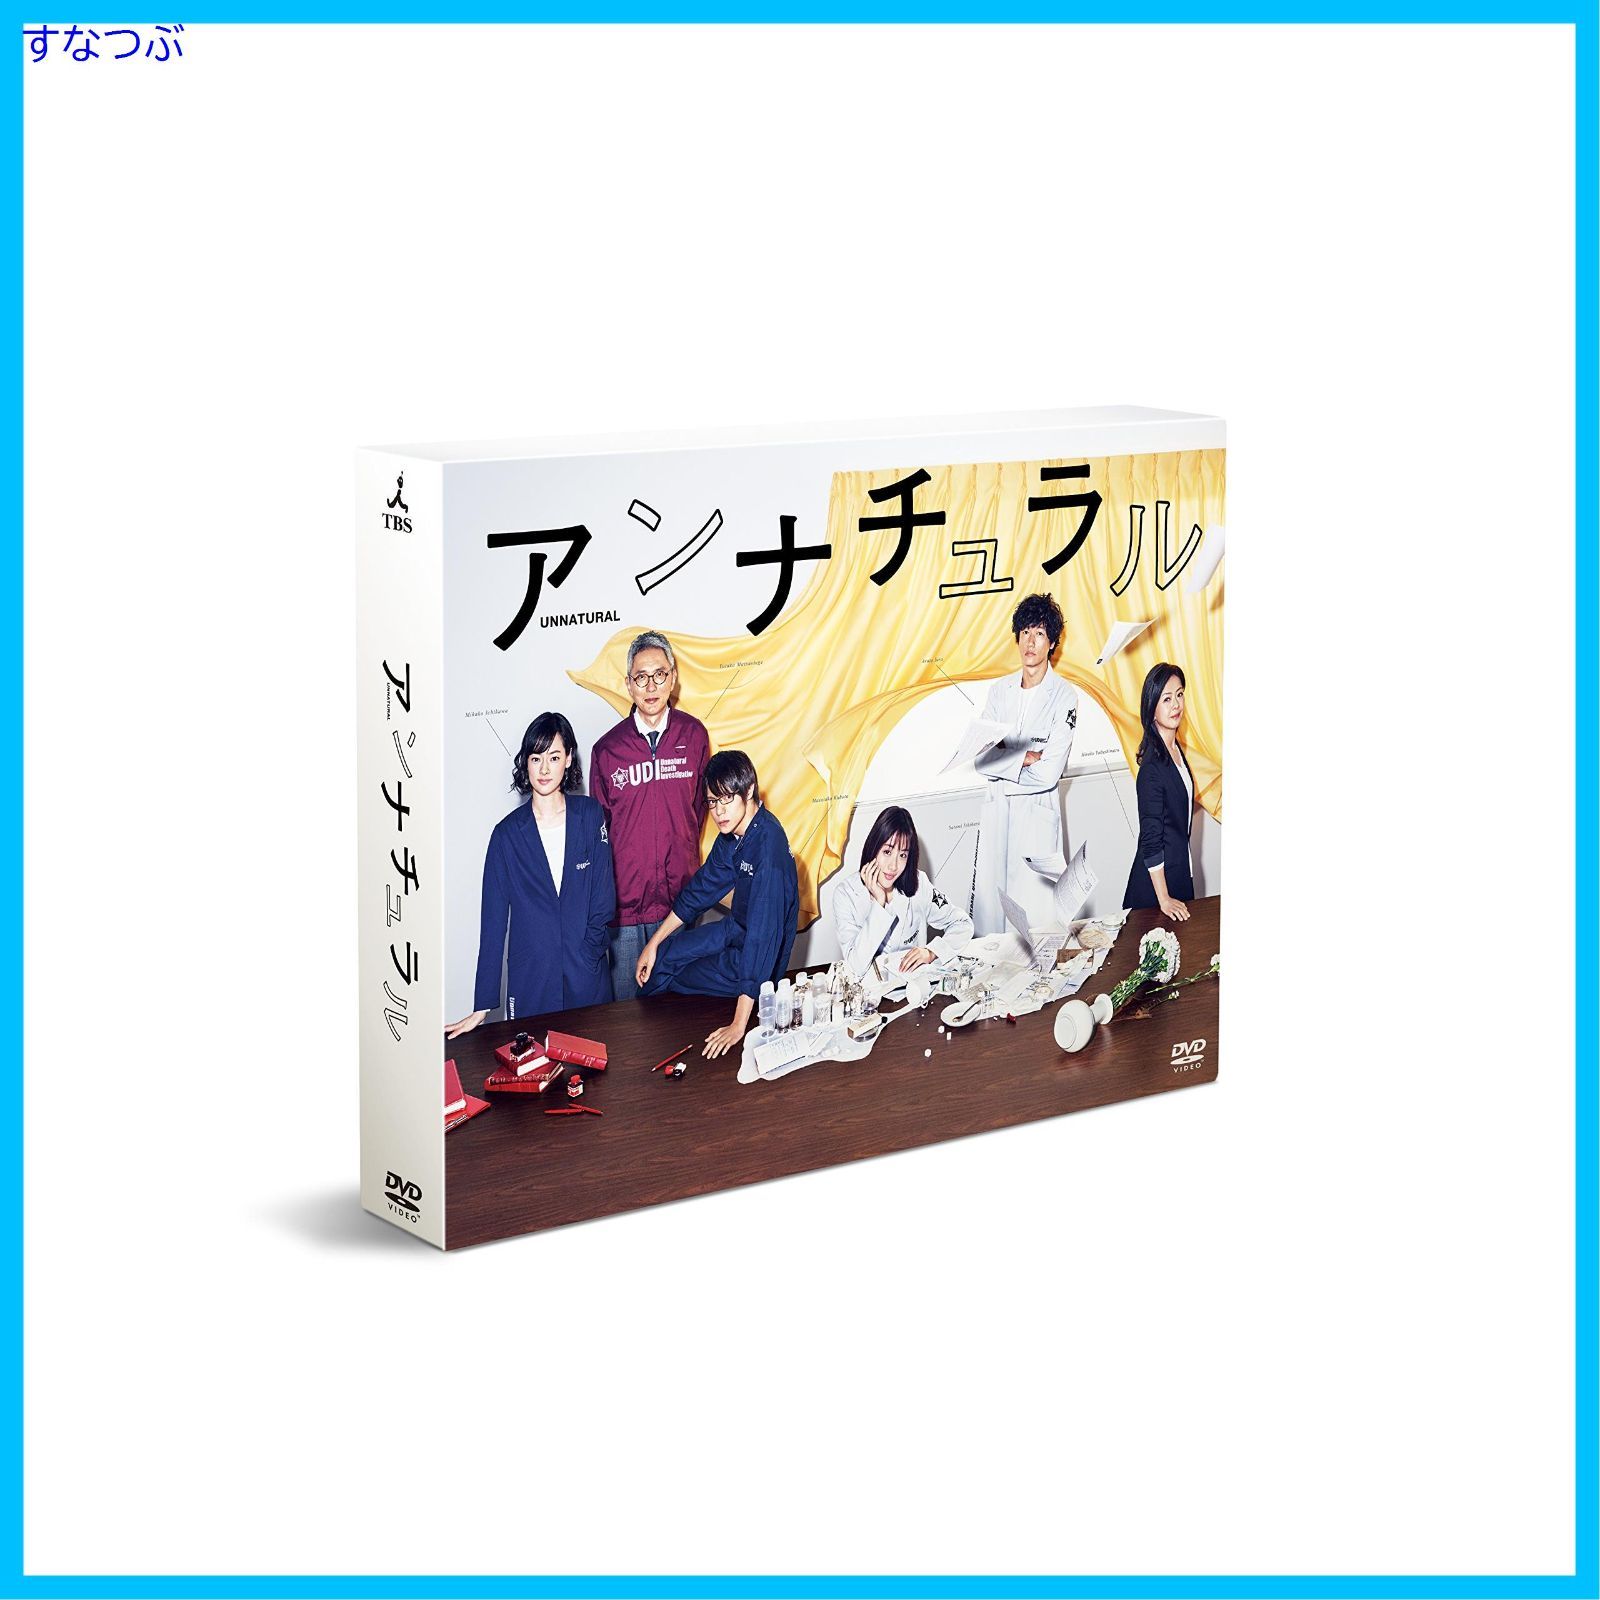 【新品未開封】アンナチュラル DVD-BOX 石原さとみ (出演) 井浦新 (出演) 形式: DVD